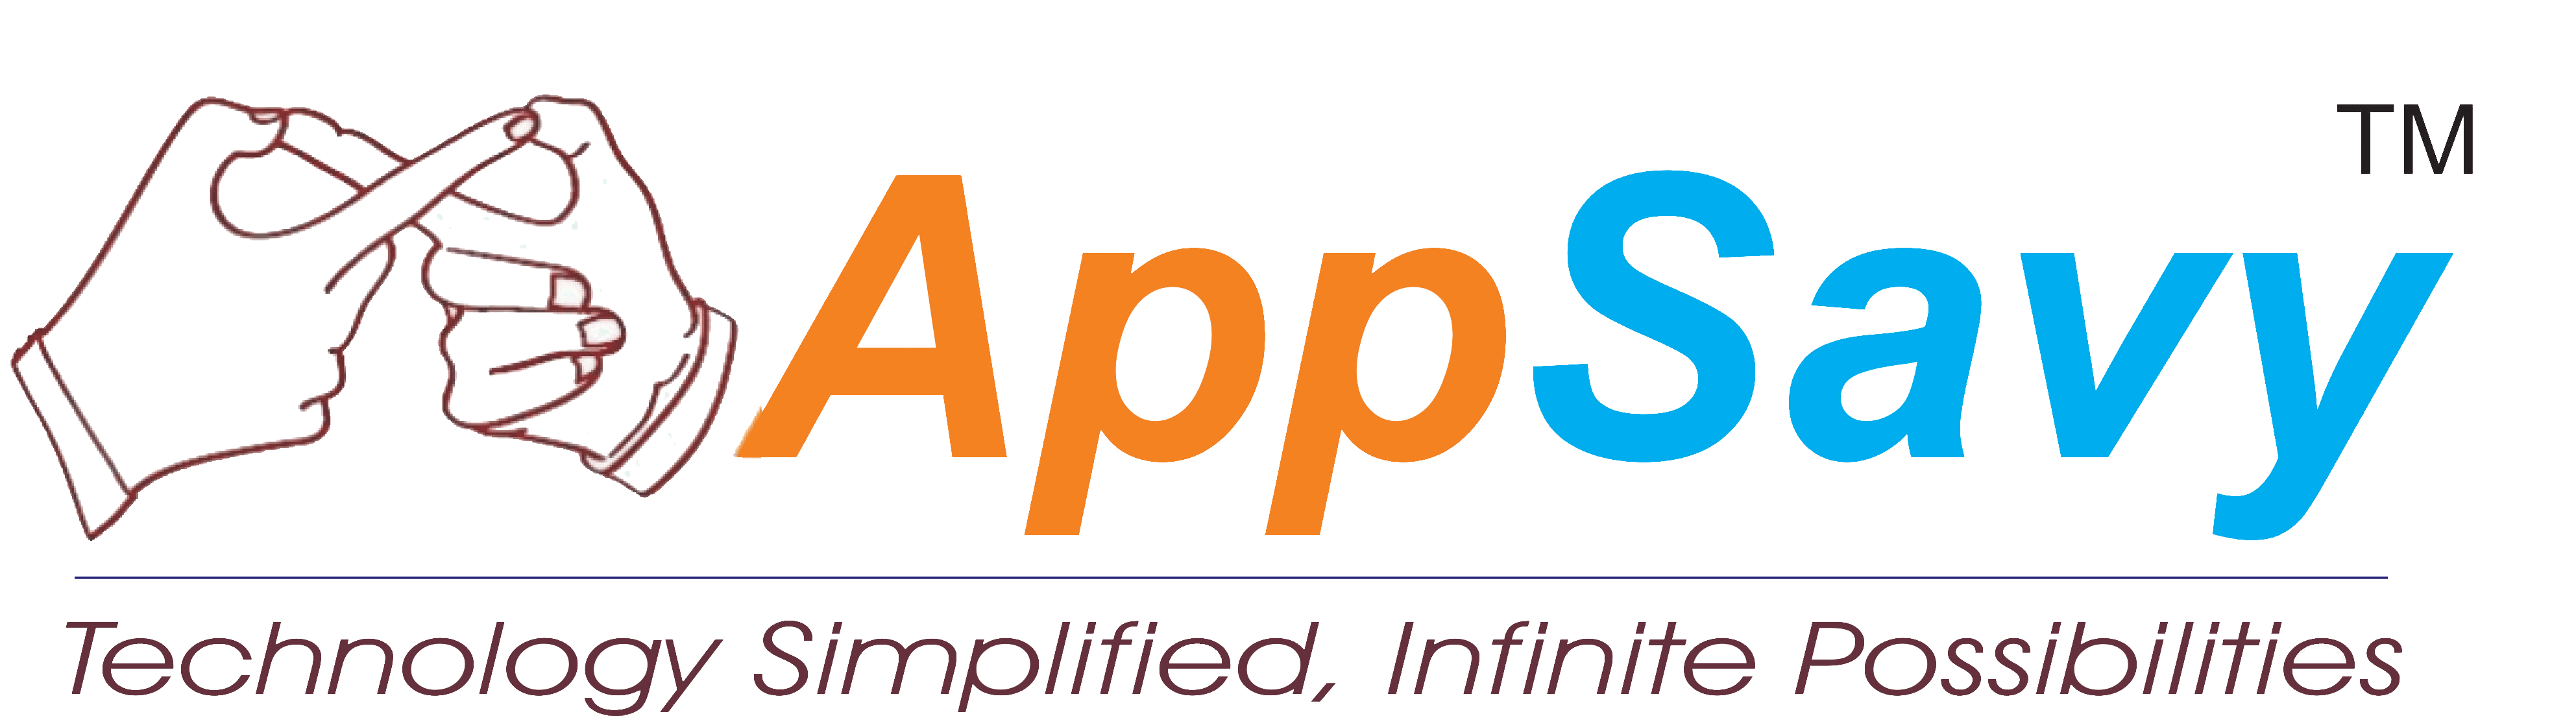 AppSavy